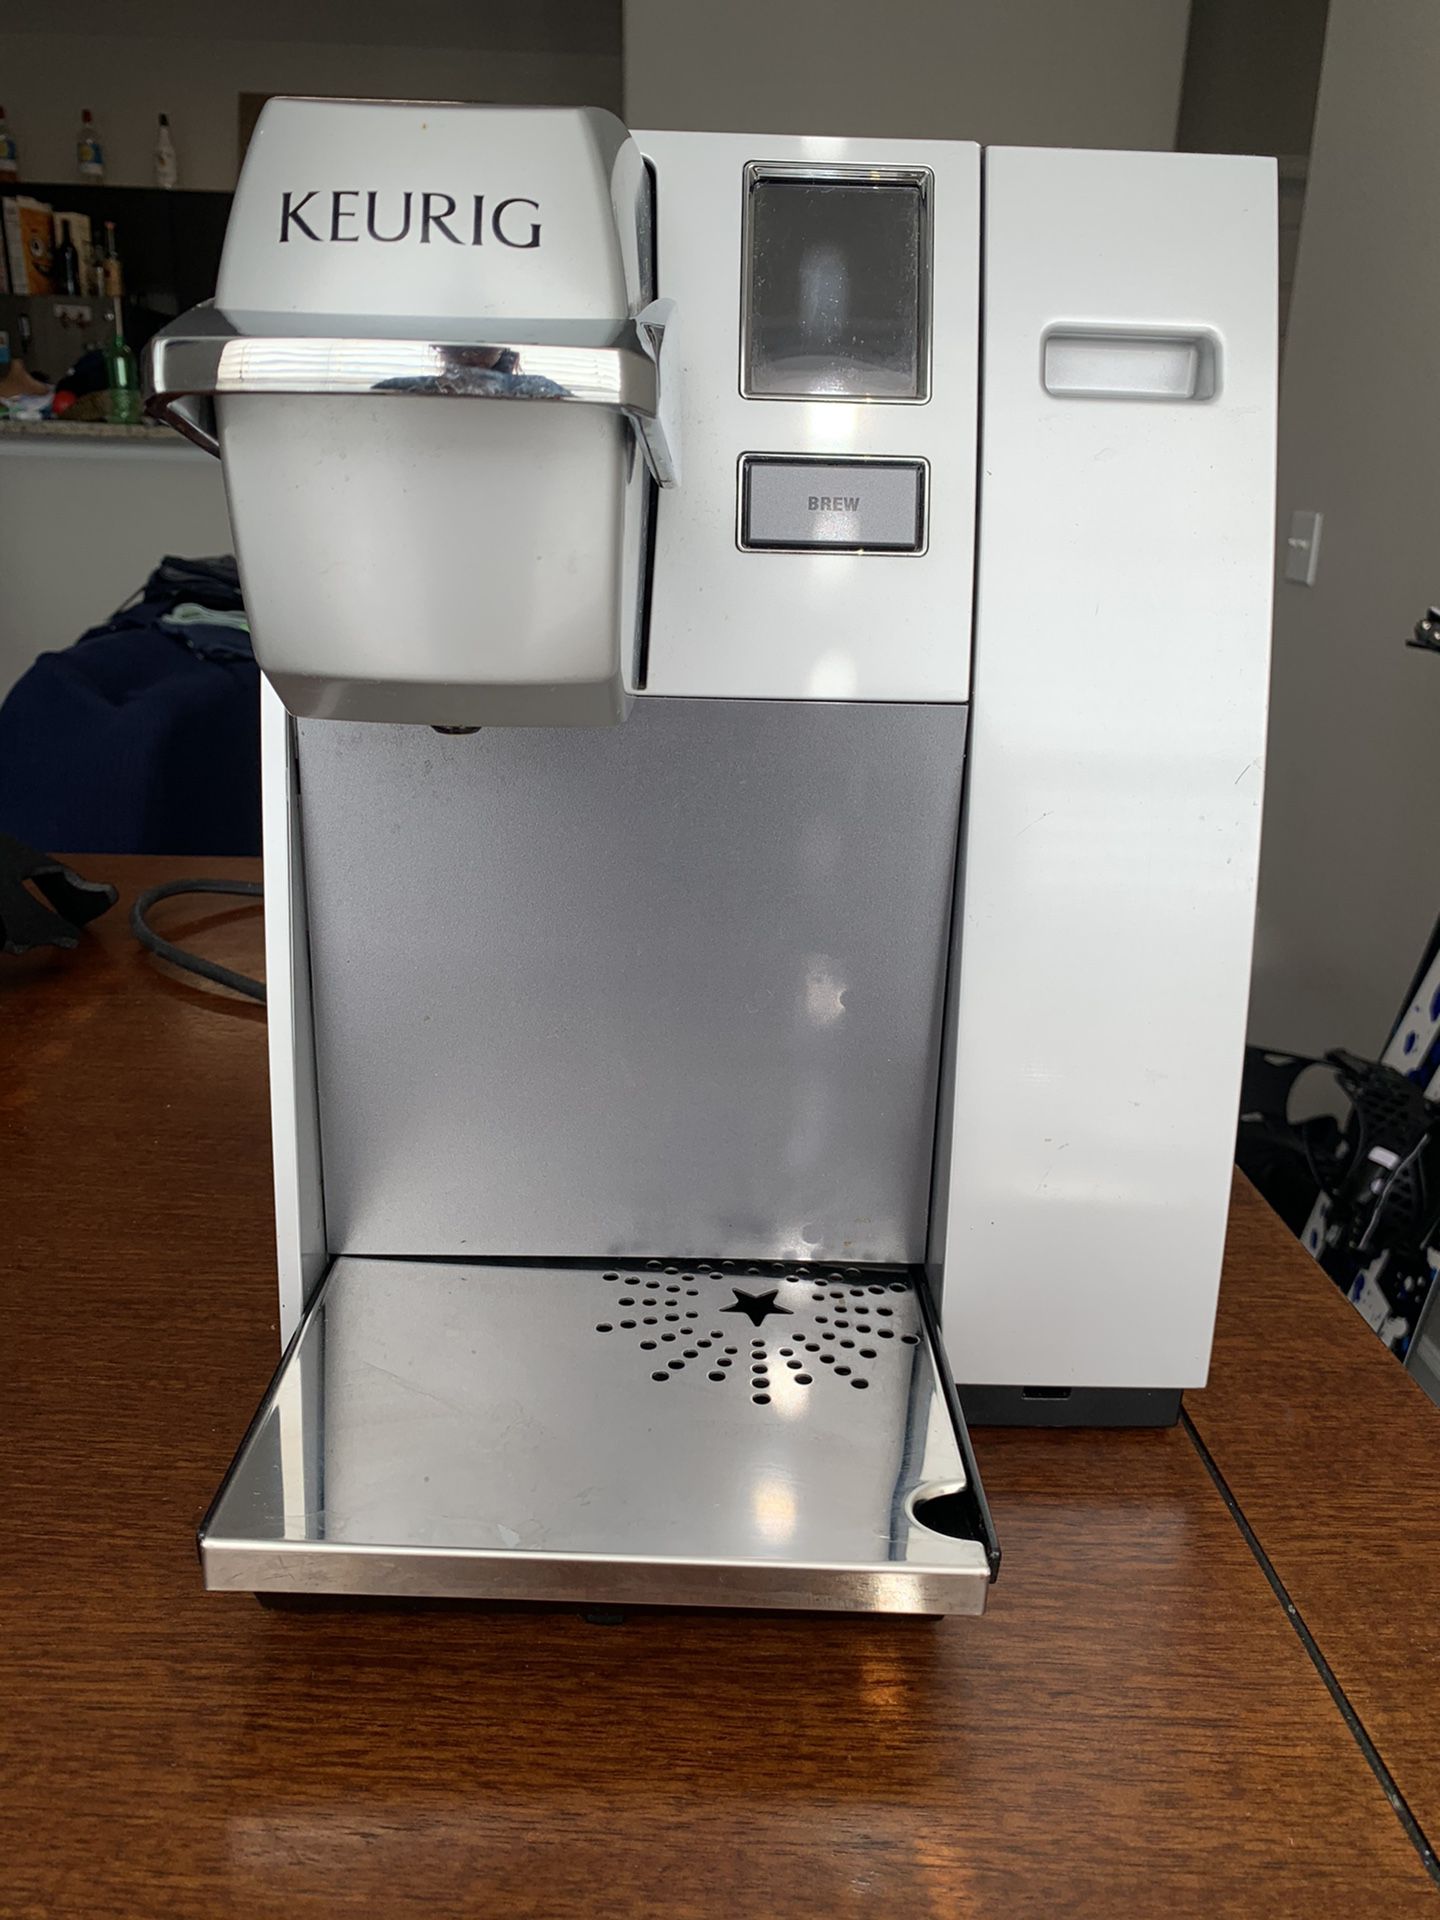 Keurig Coffee Maker (Model K155)